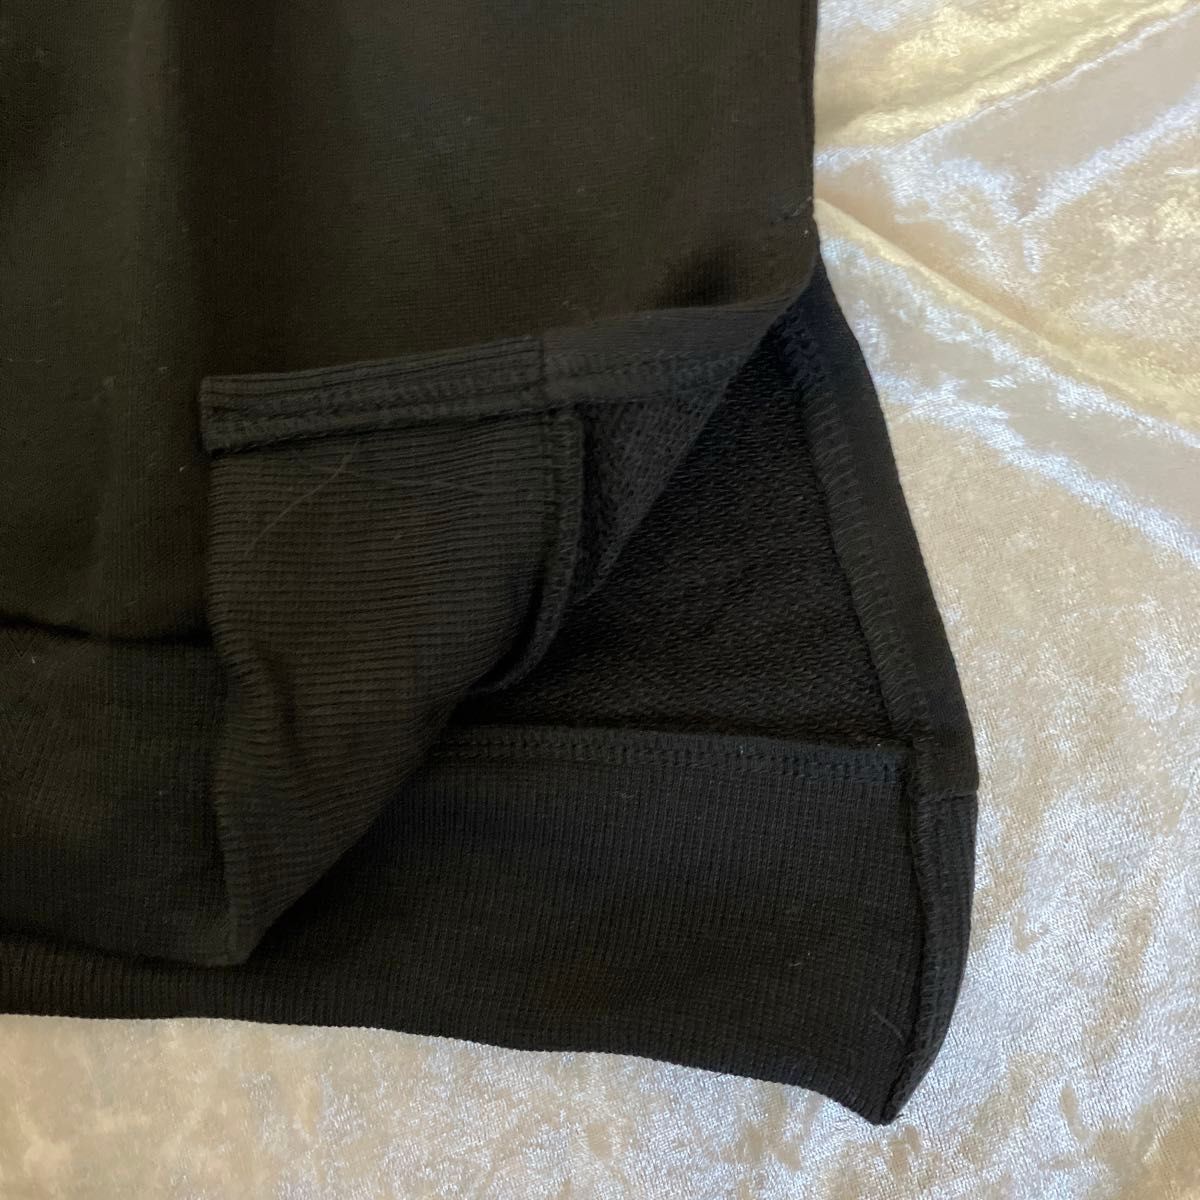 スウェット トレーナー キーネック 裾袖リブ 脇スリット ブラック Mサイズ 新品未使用